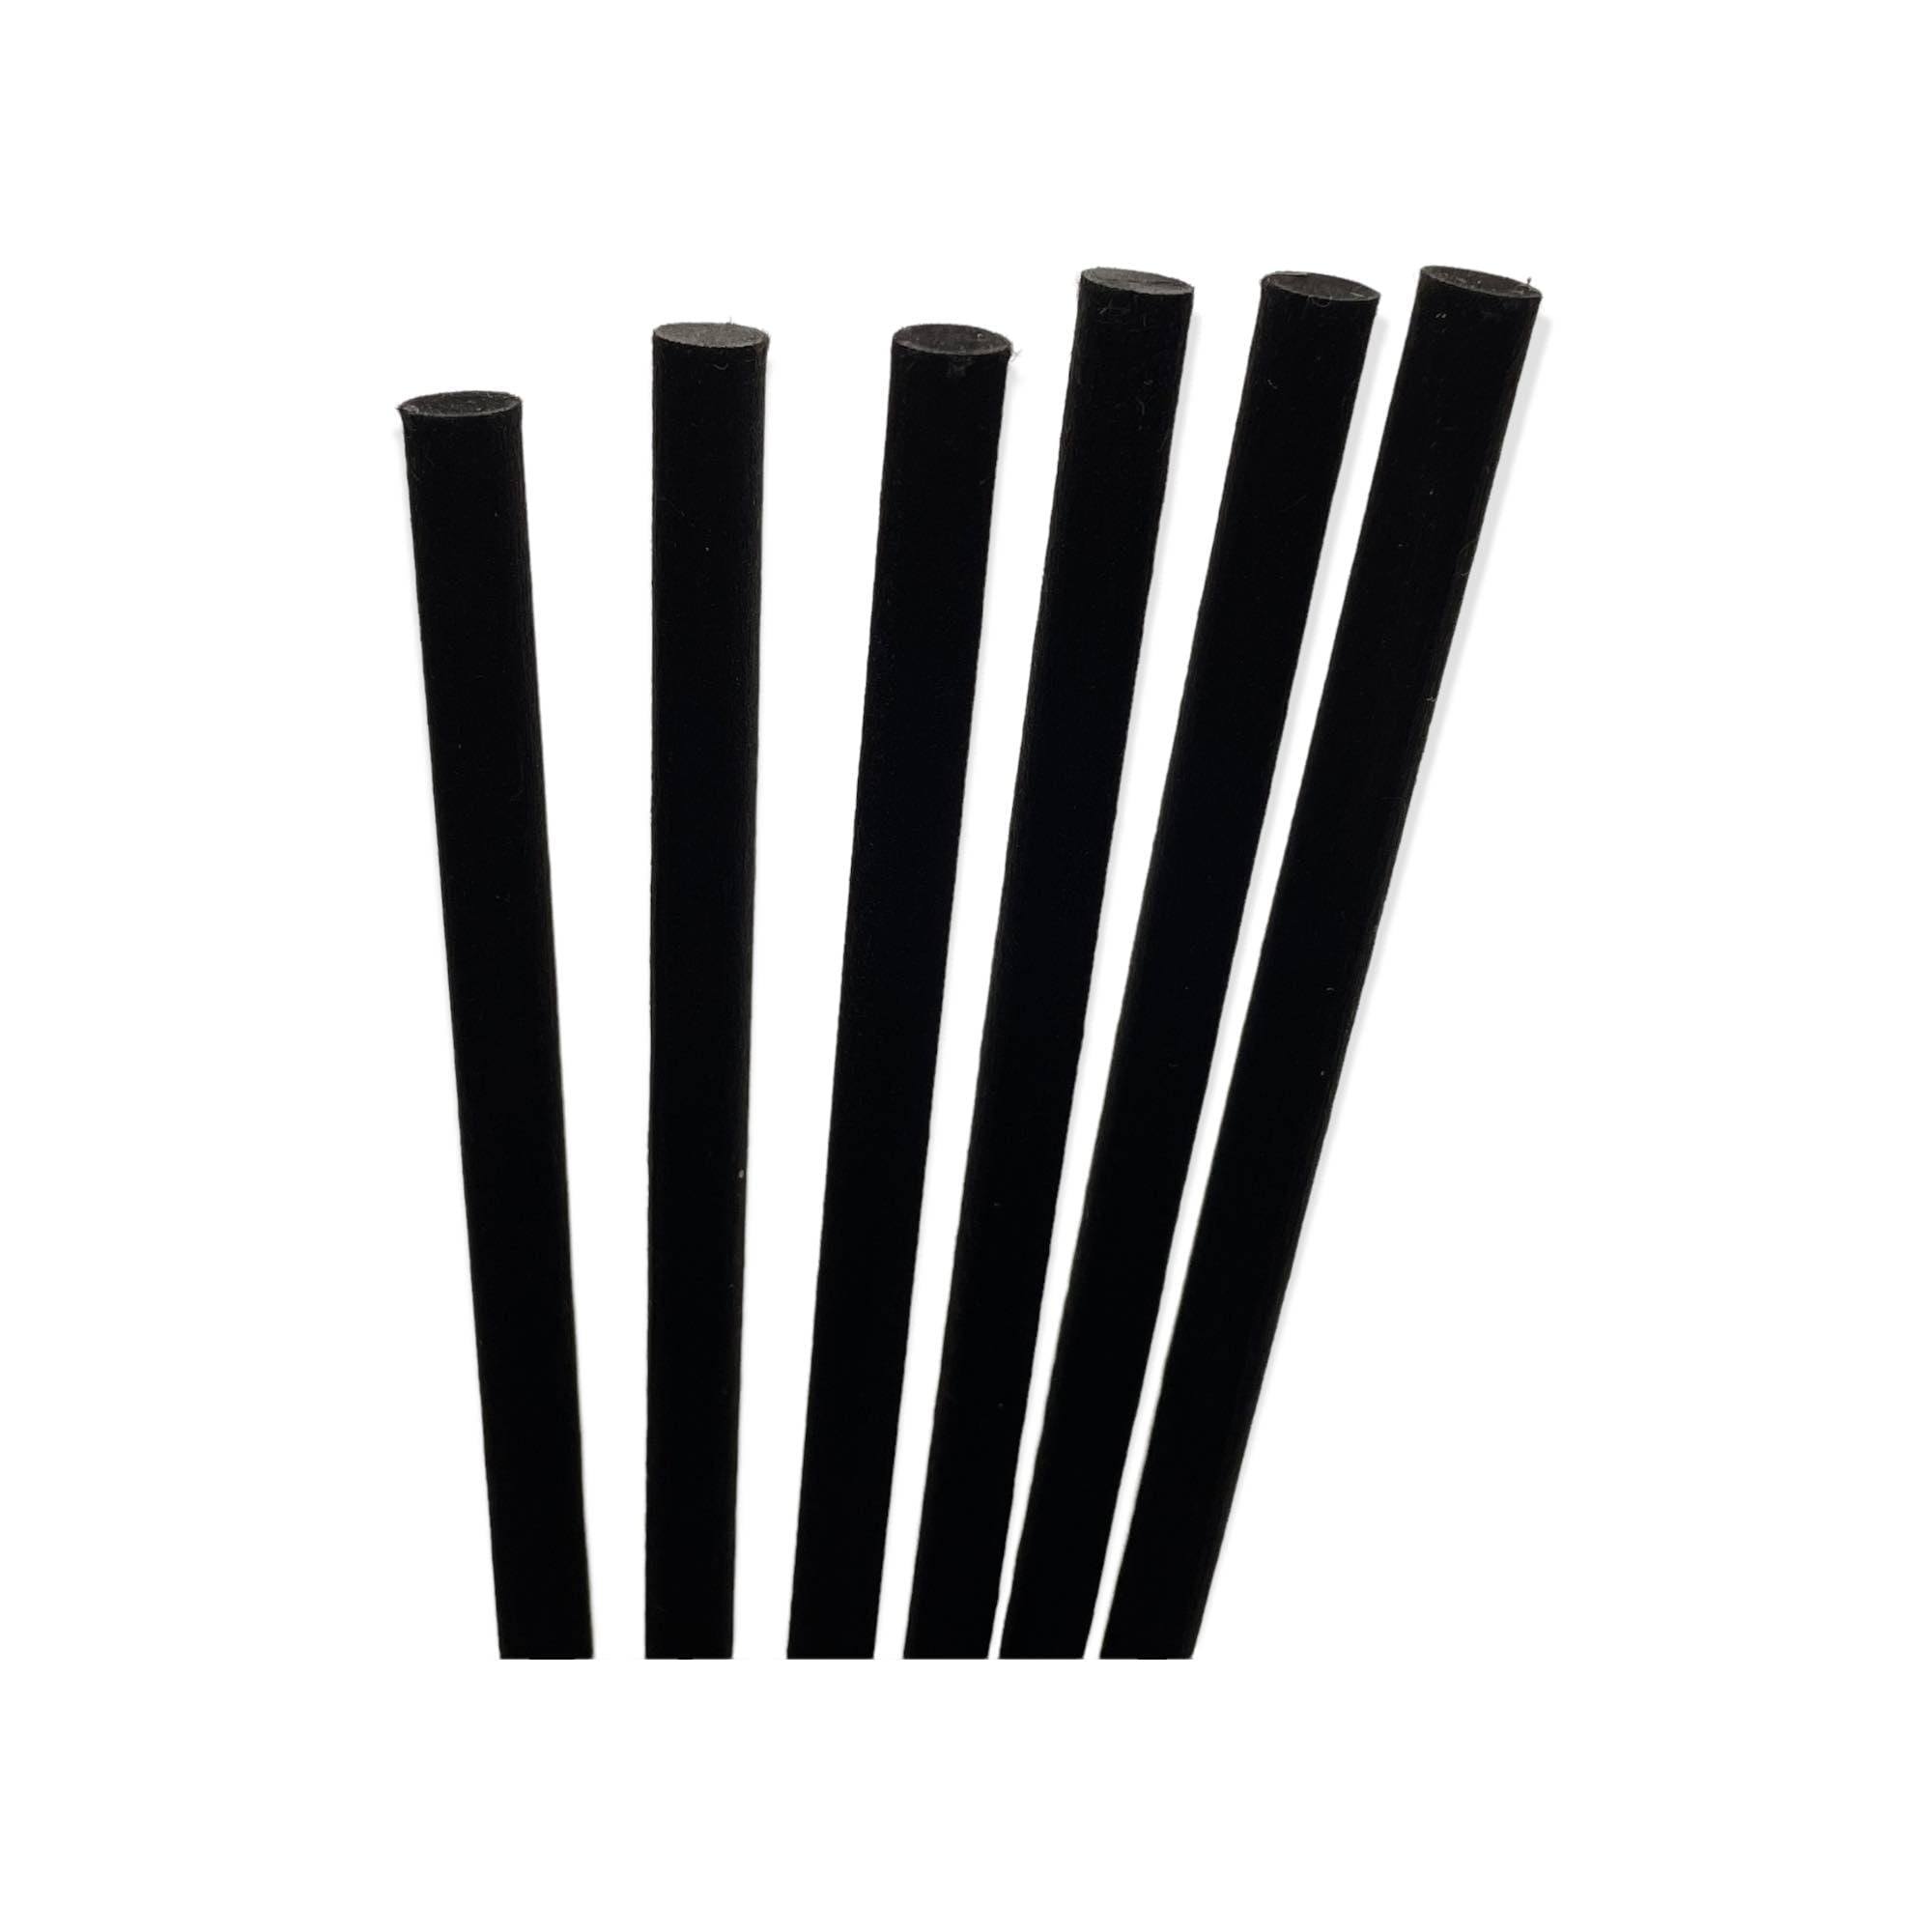 Black Fibre Diffuser Reeds 6mm